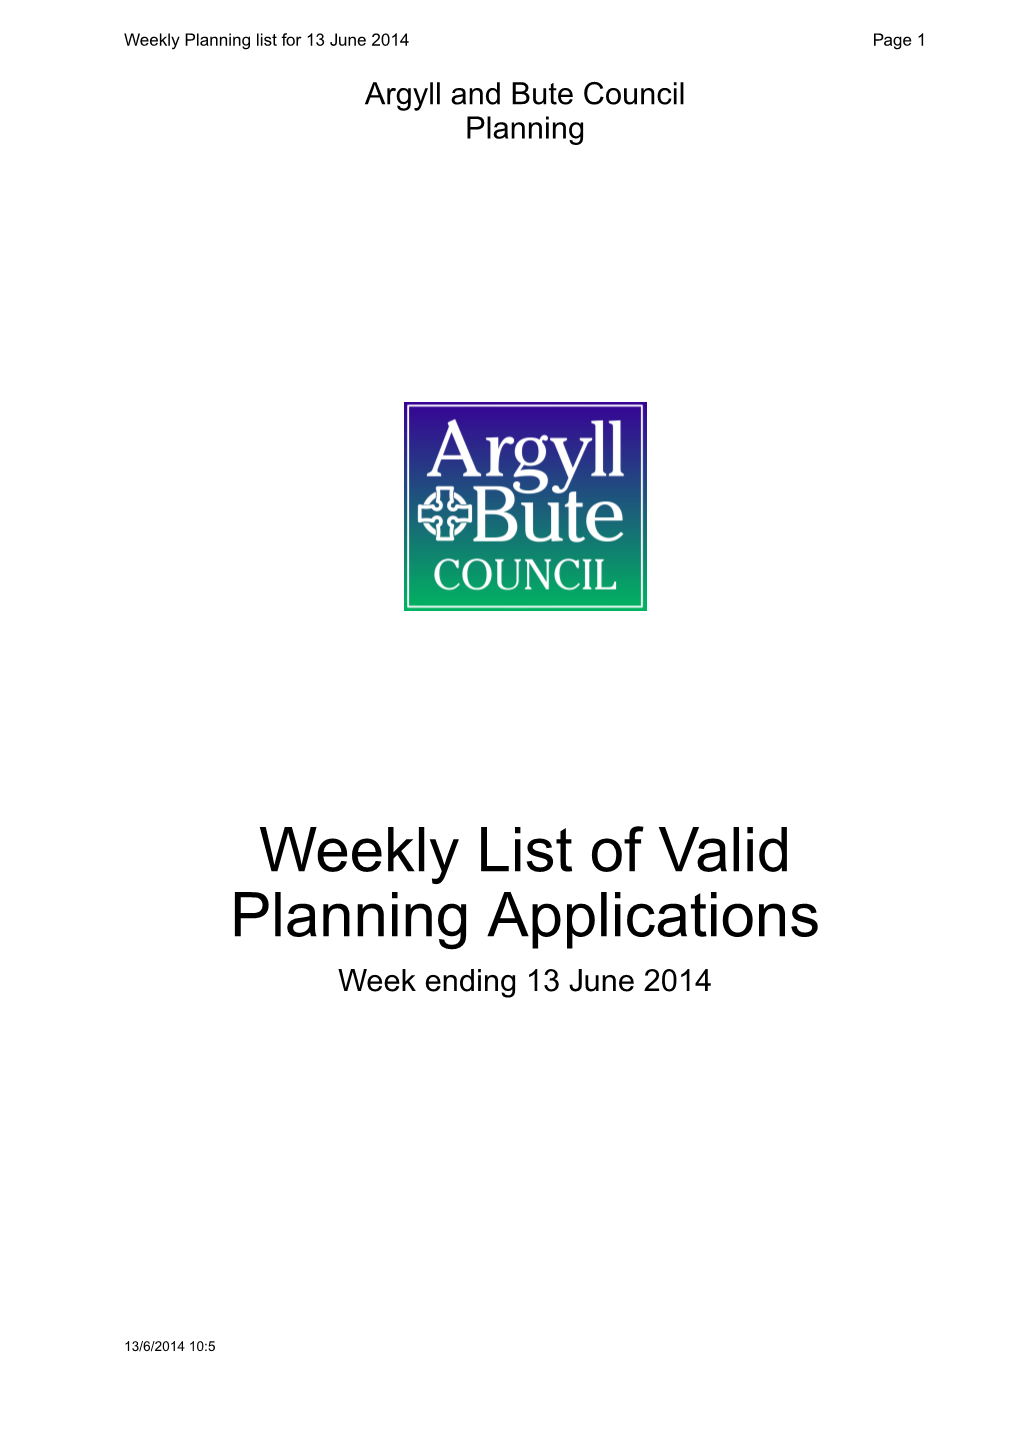 Weekly List of Valid Planning Applications Week Ending 13 June 2014